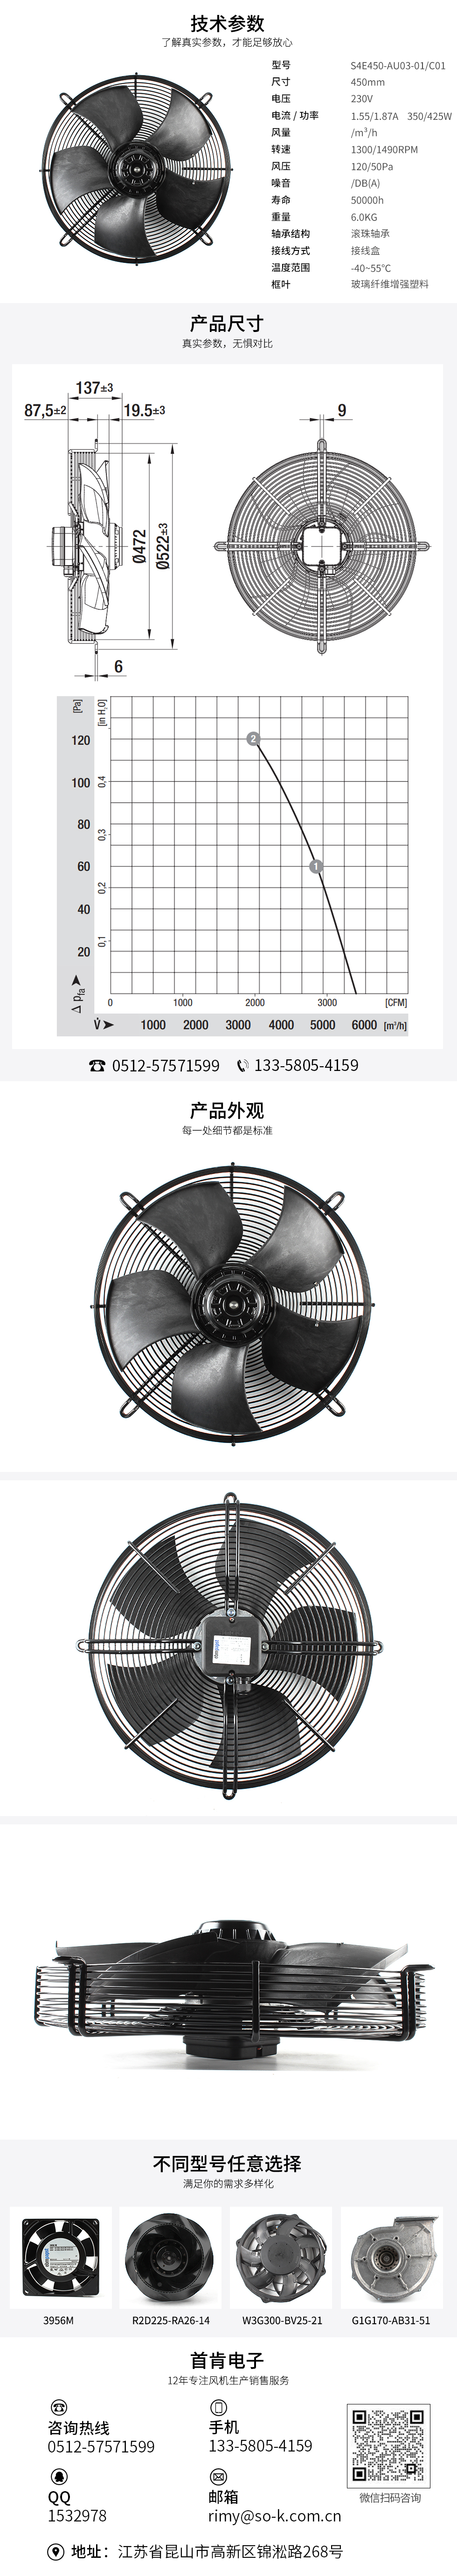 交流风扇价格,进口轴流散热风扇,净化器轴流风扇,S4E450-AU03-01/C01